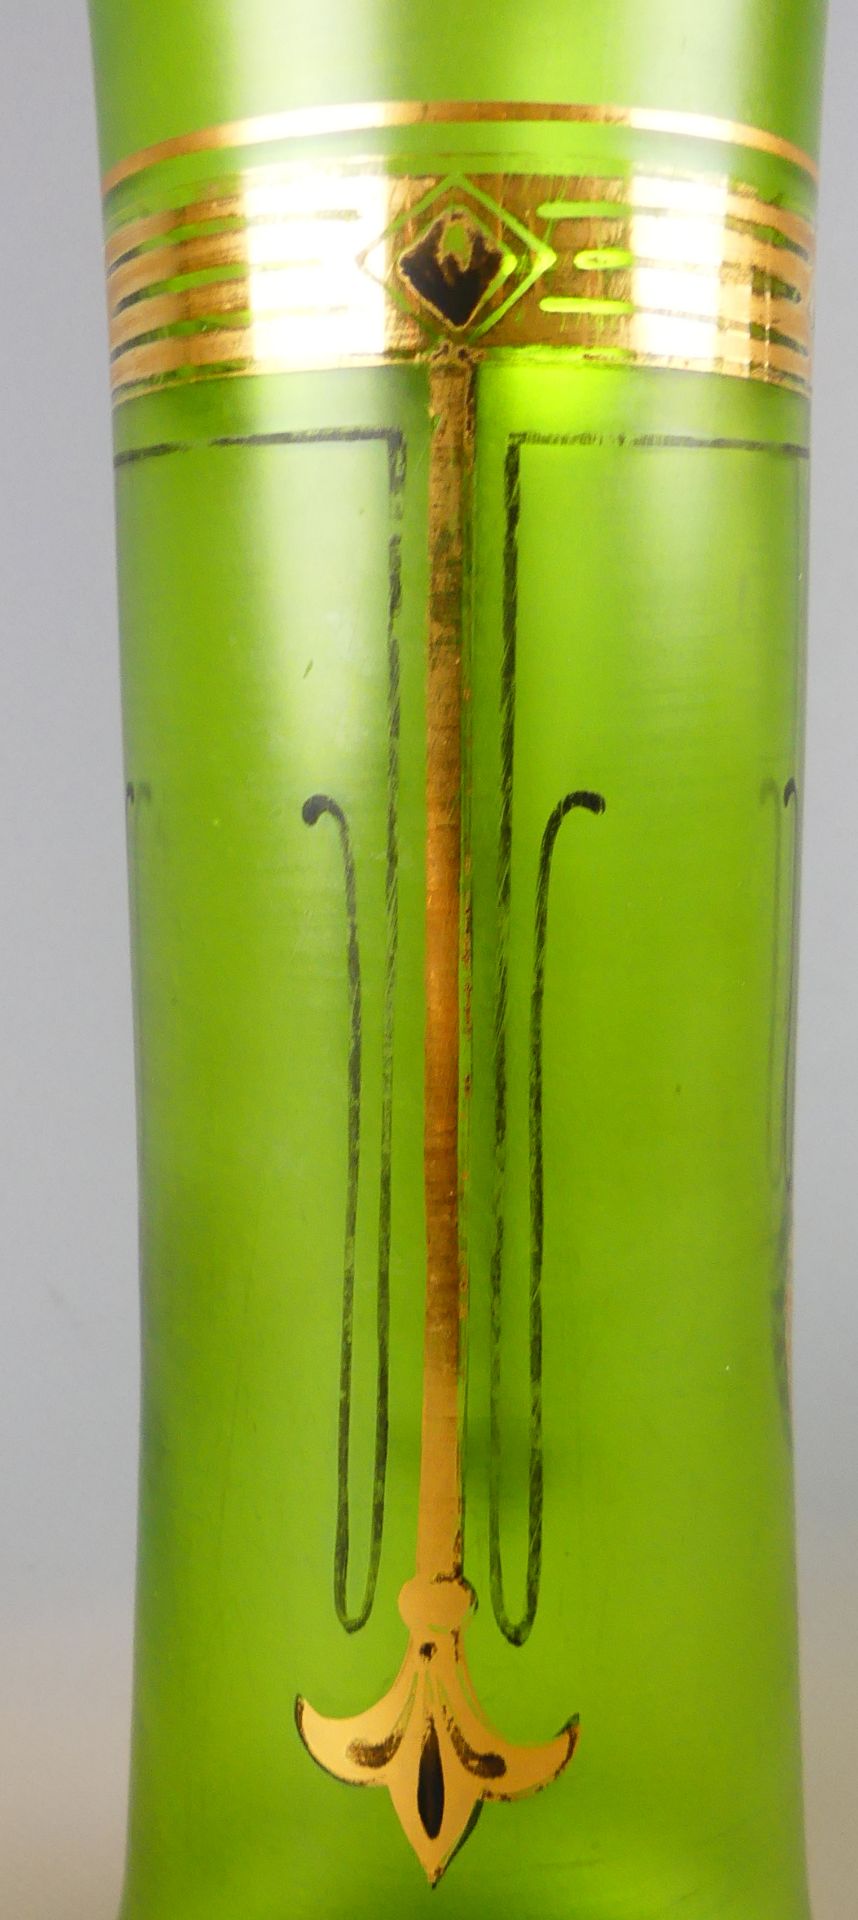 Vase, Glas, grün, goldfarbene Ornamente (teils verwischt), Jugendstil, H. ca. 25 cm - Image 2 of 3